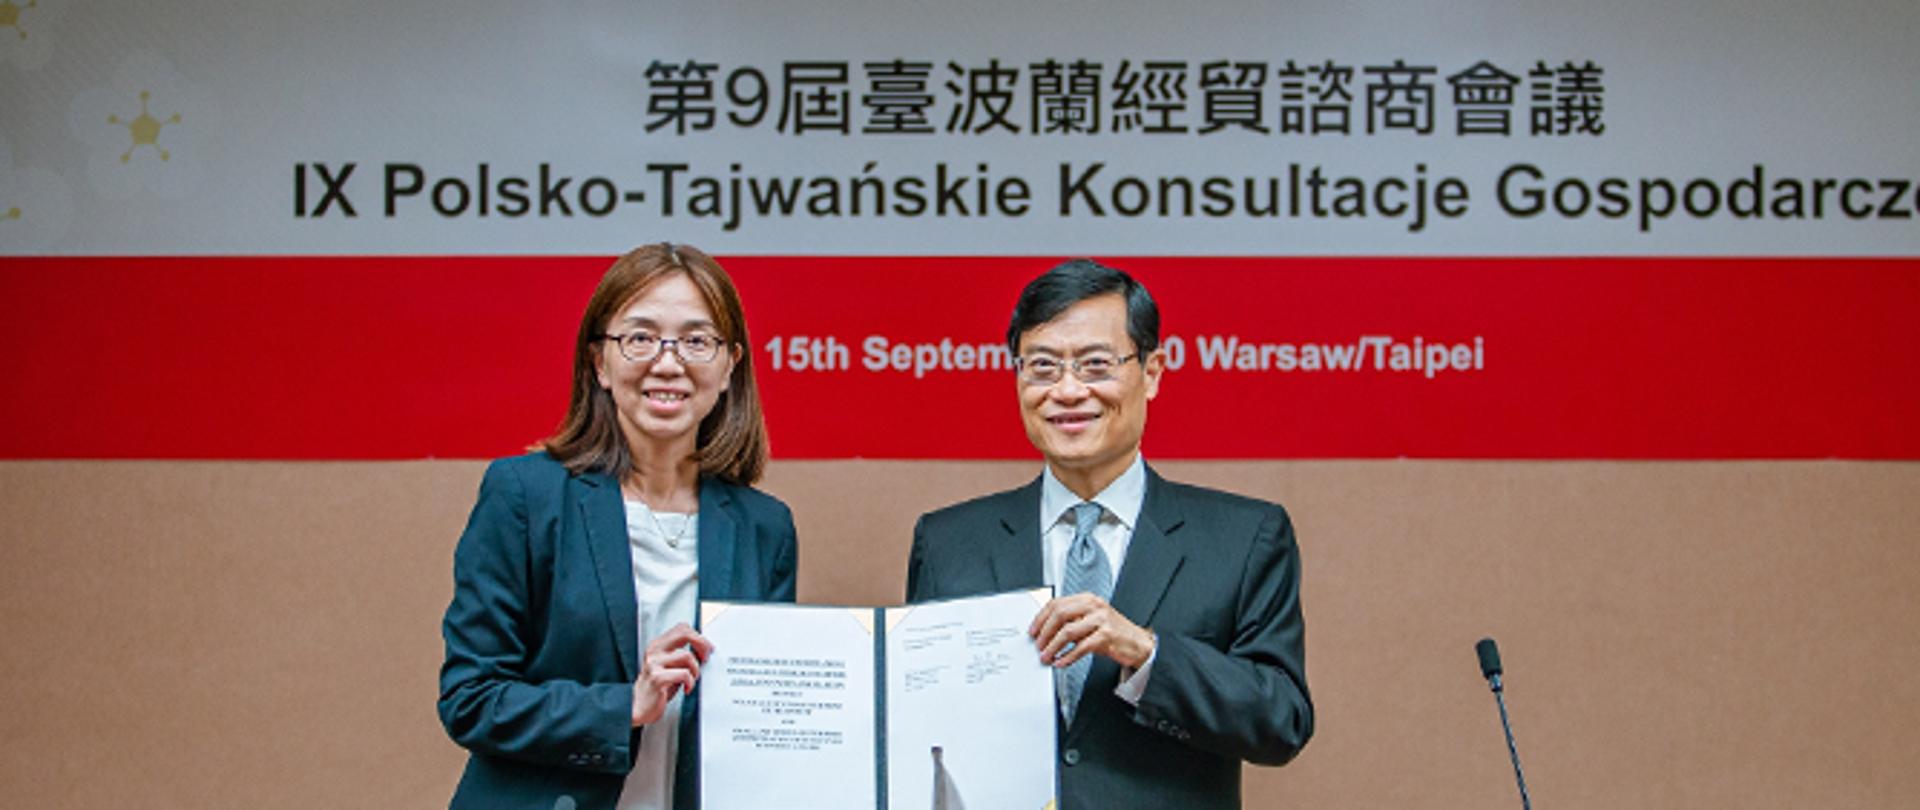 IX polsko–tajwańskie konsultacje gospodarcze 